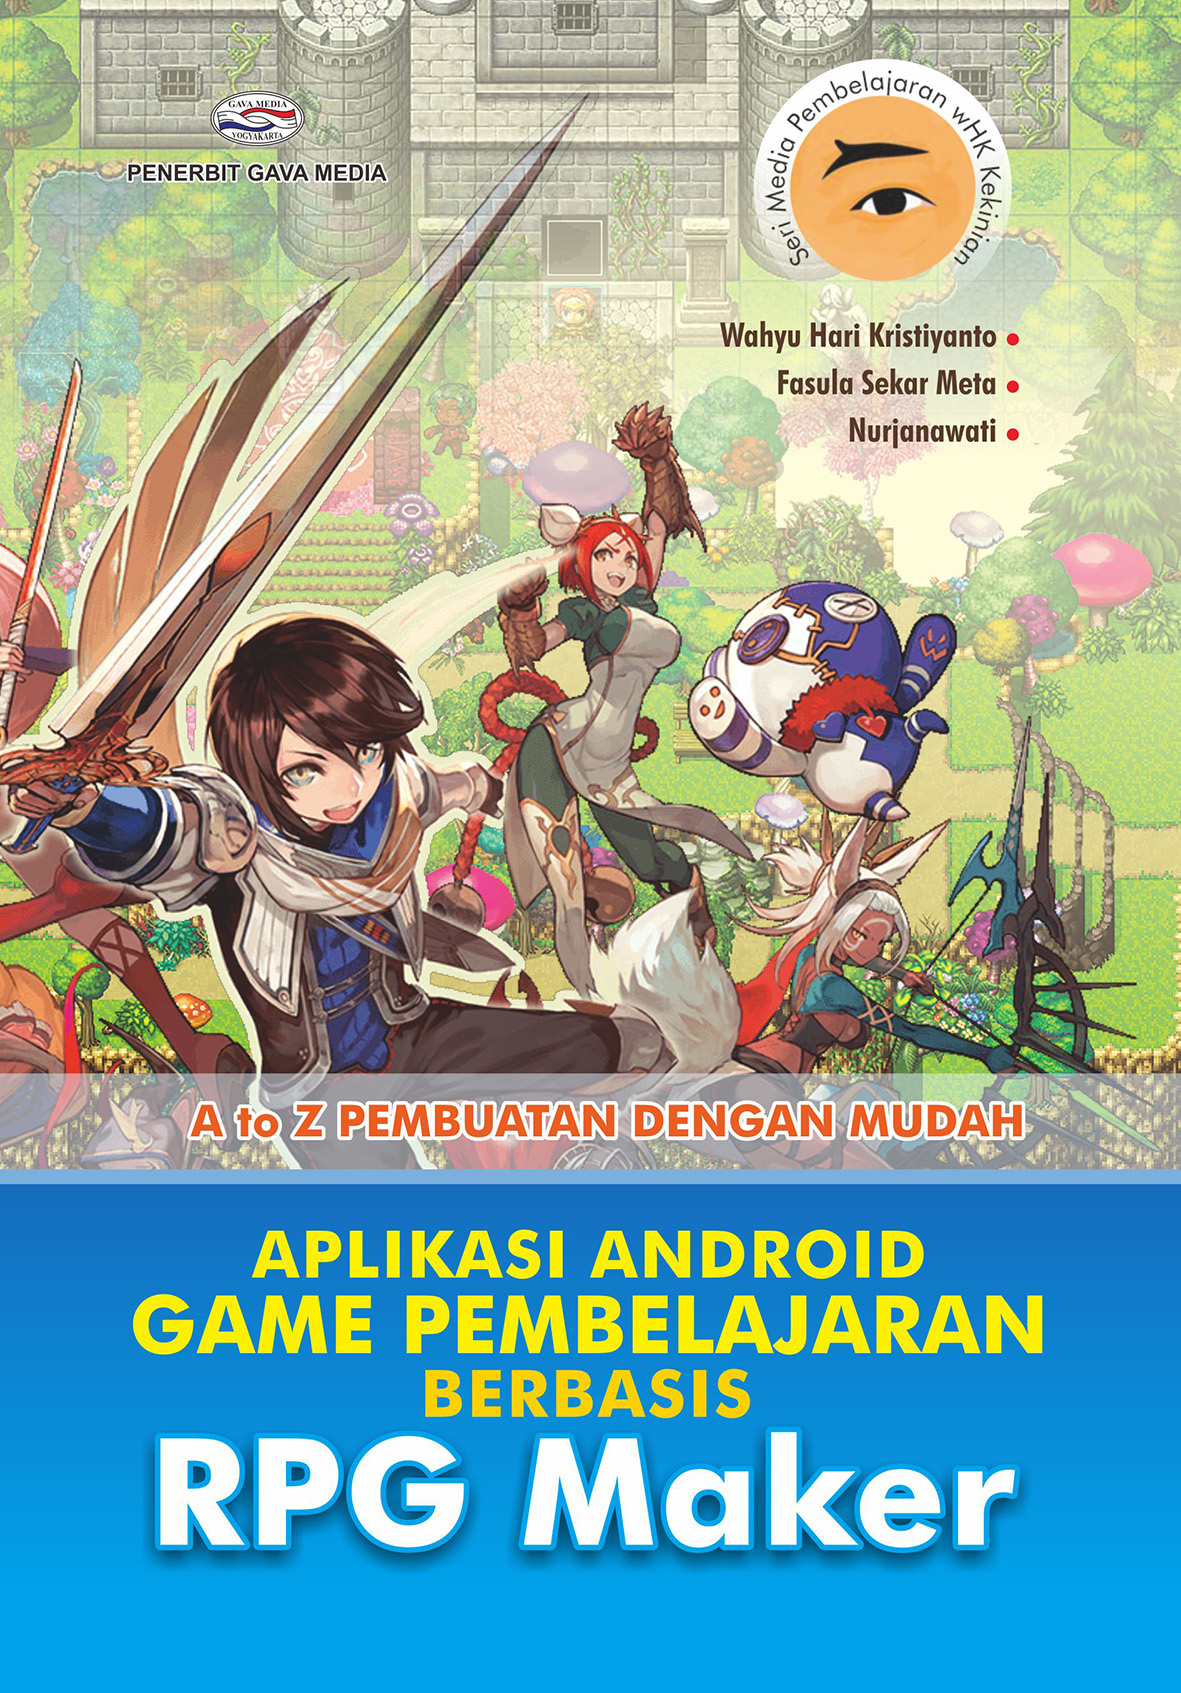 Aplikasi Android Game Pembelajaran Berbasis RPG Maker